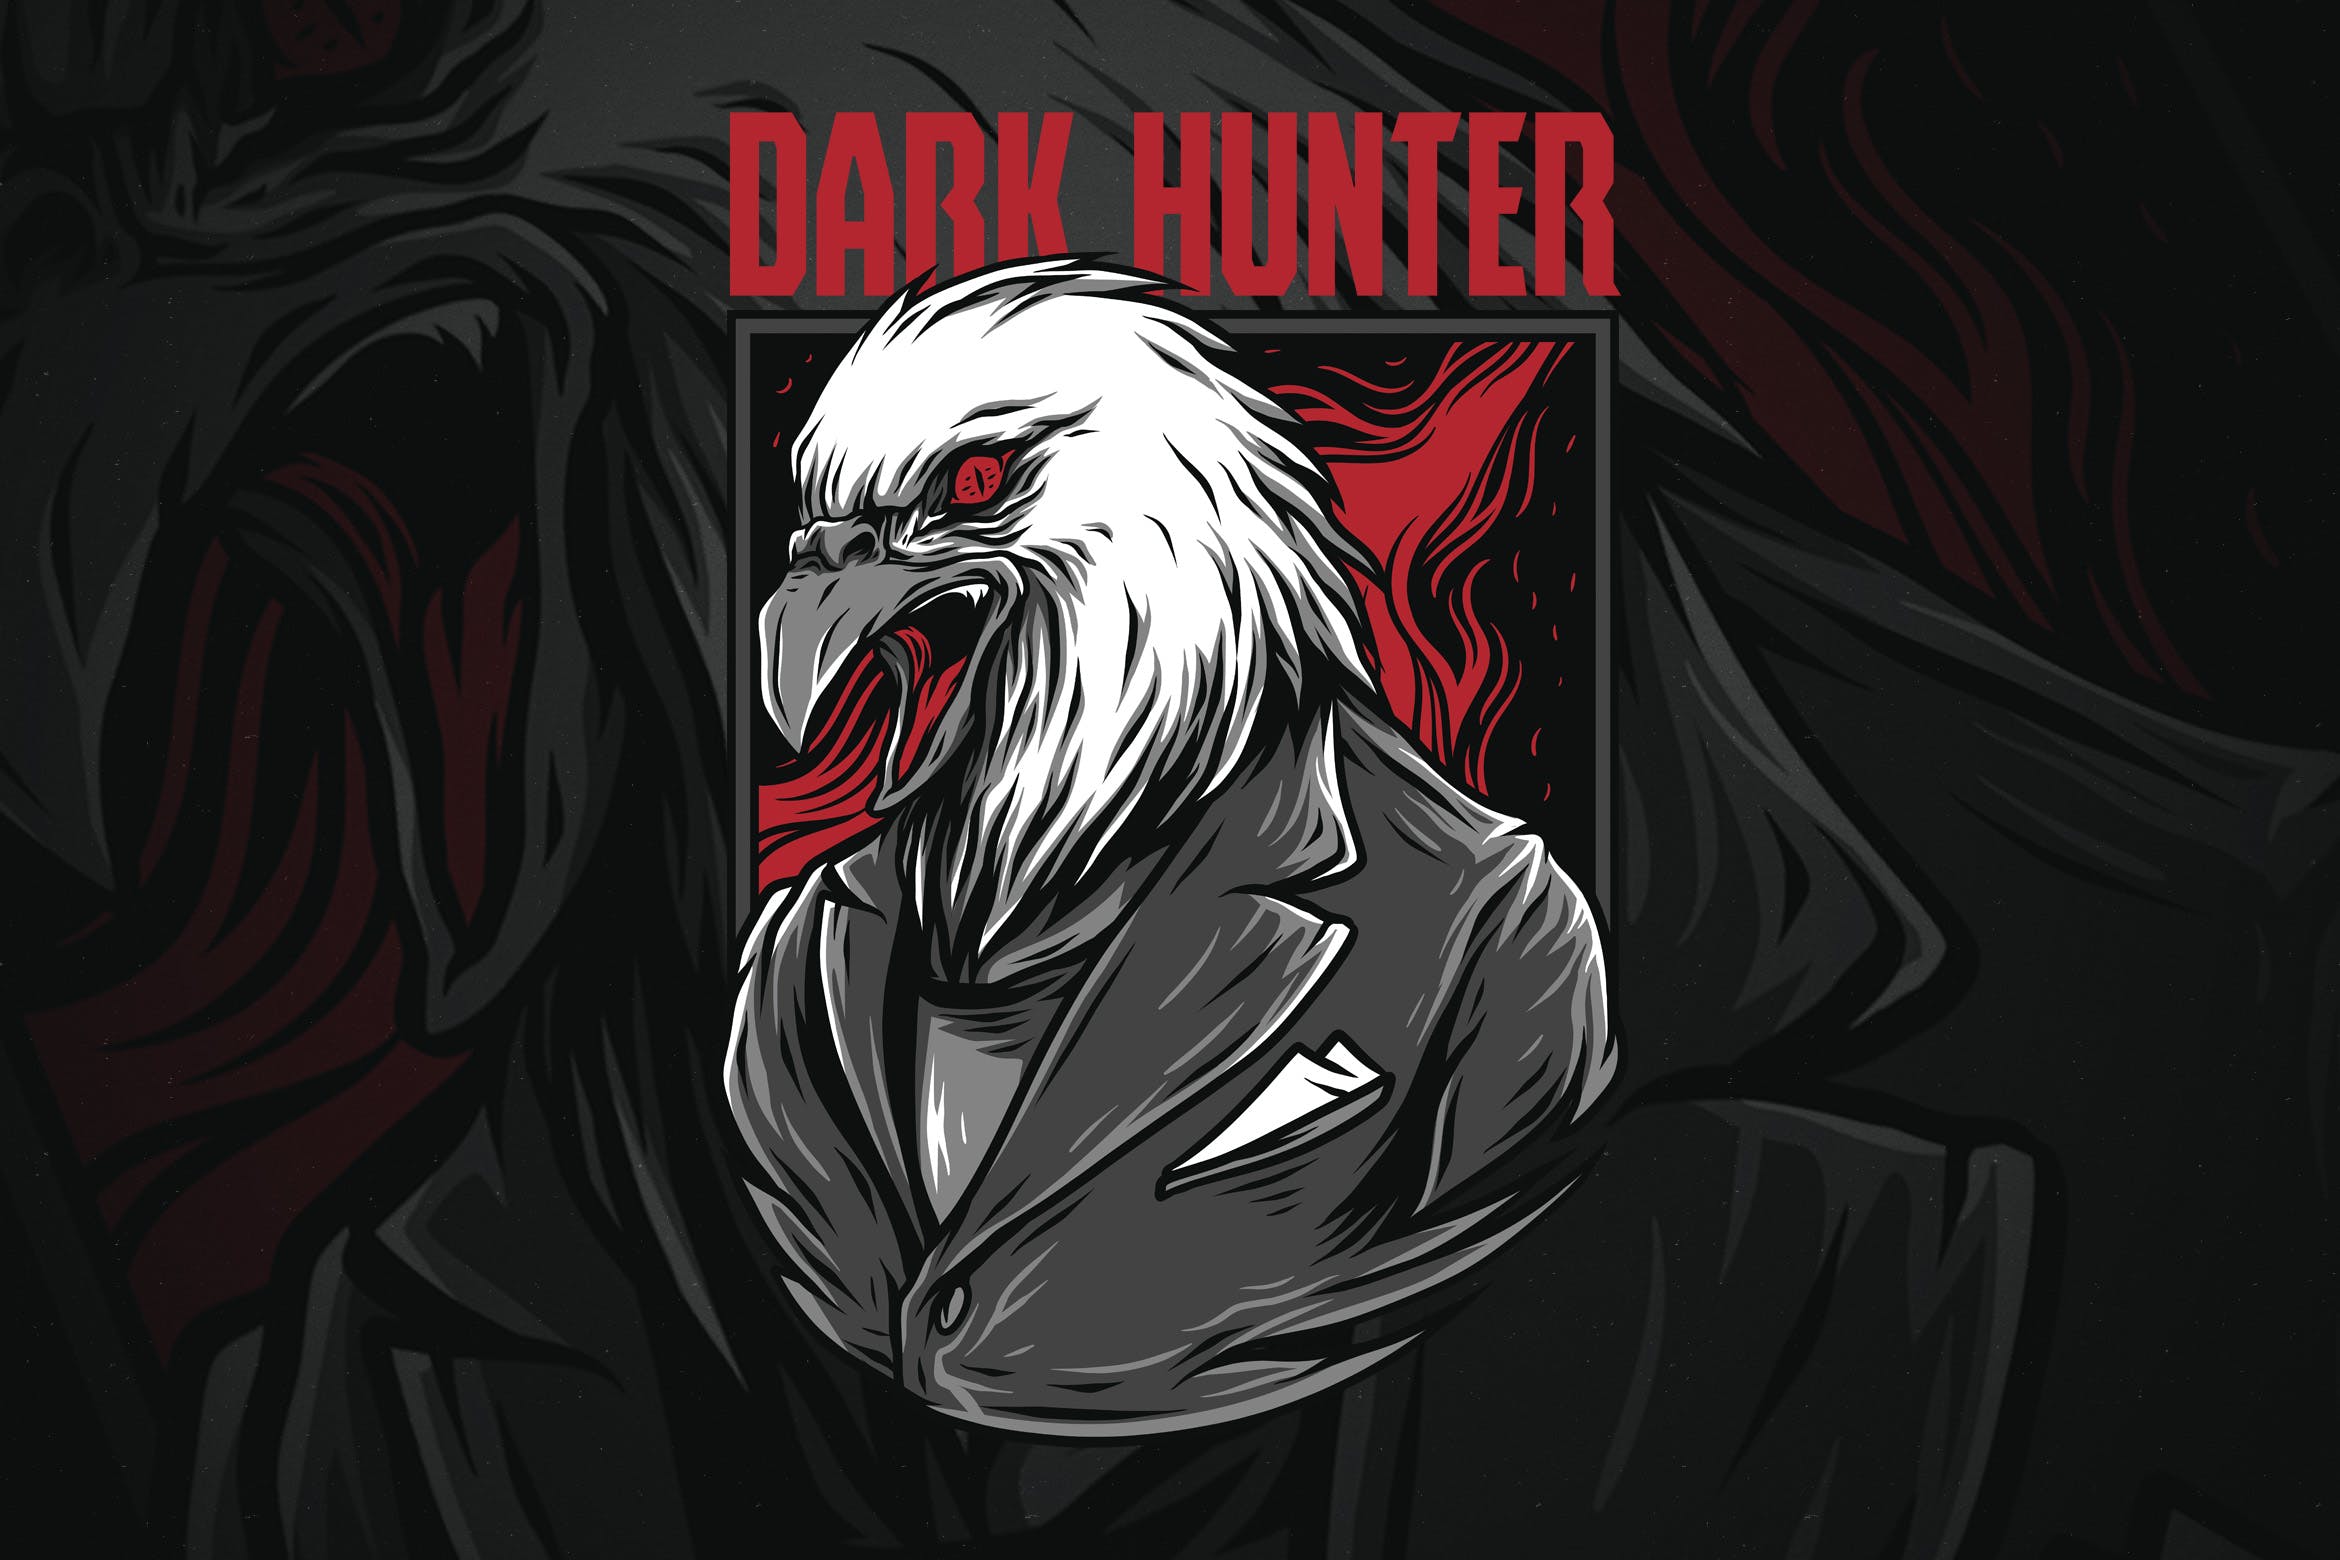 黑暗猎鹰潮牌T恤印花图案第一素材精选设计素材 Dark Hunter插图